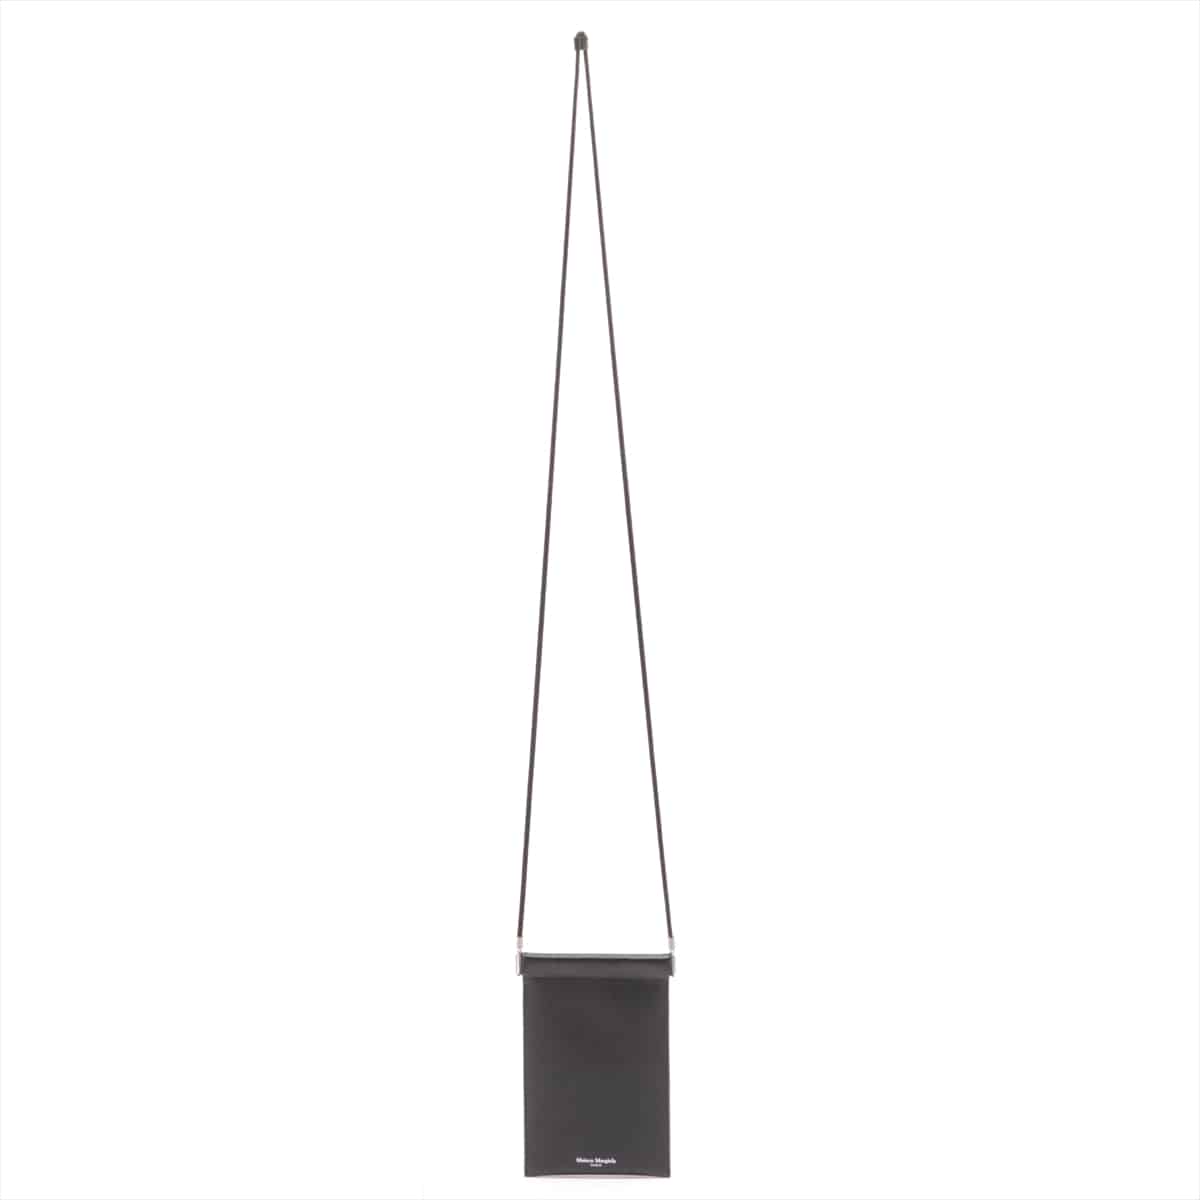 Maison Margiela Leather Shoulder bag Black S55UI0207 Phone pouch